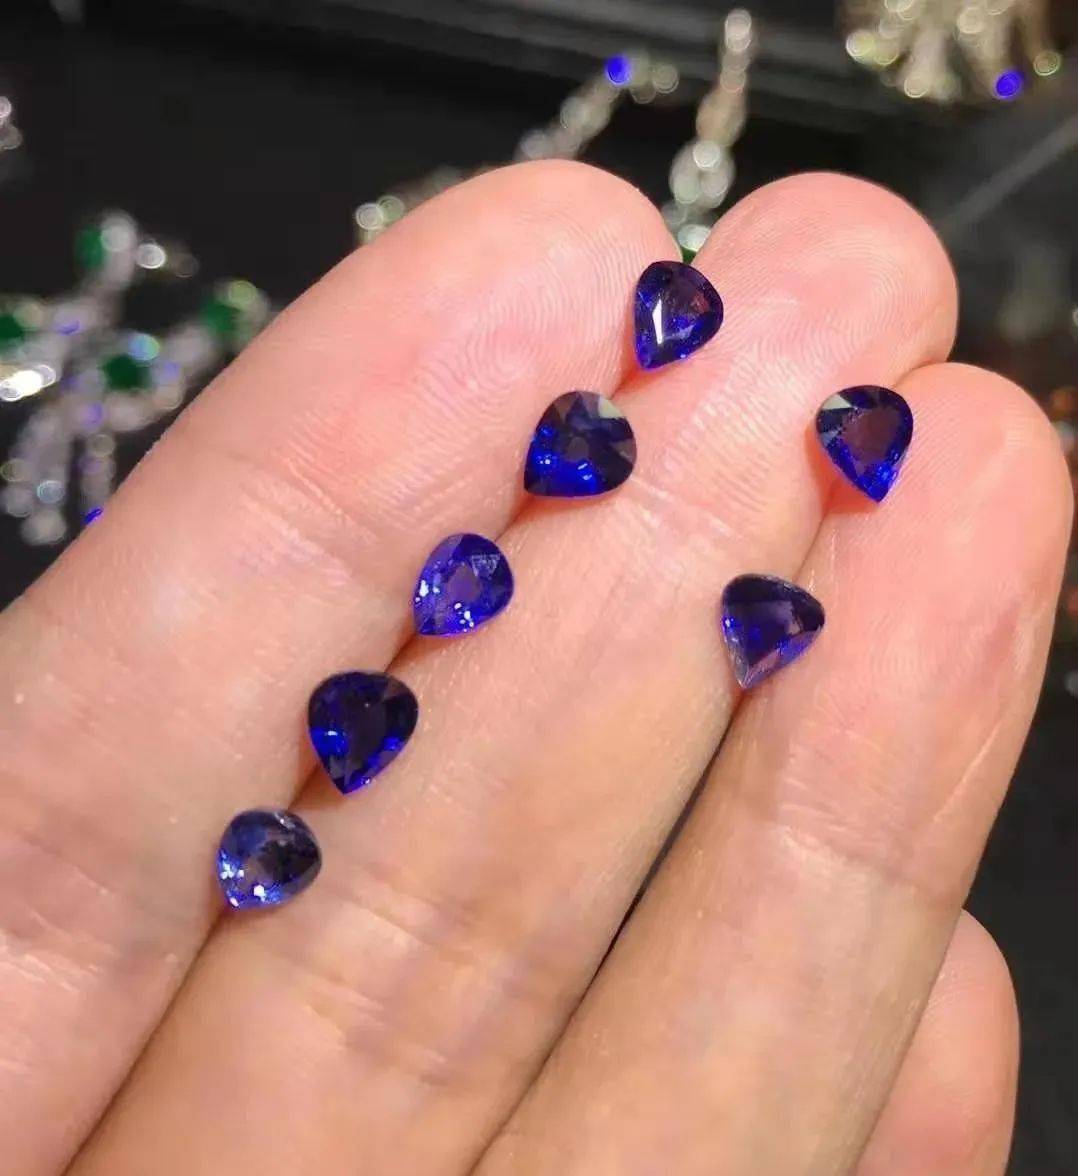 蓝宝石批发市场如何鉴定蓝宝石真伪?